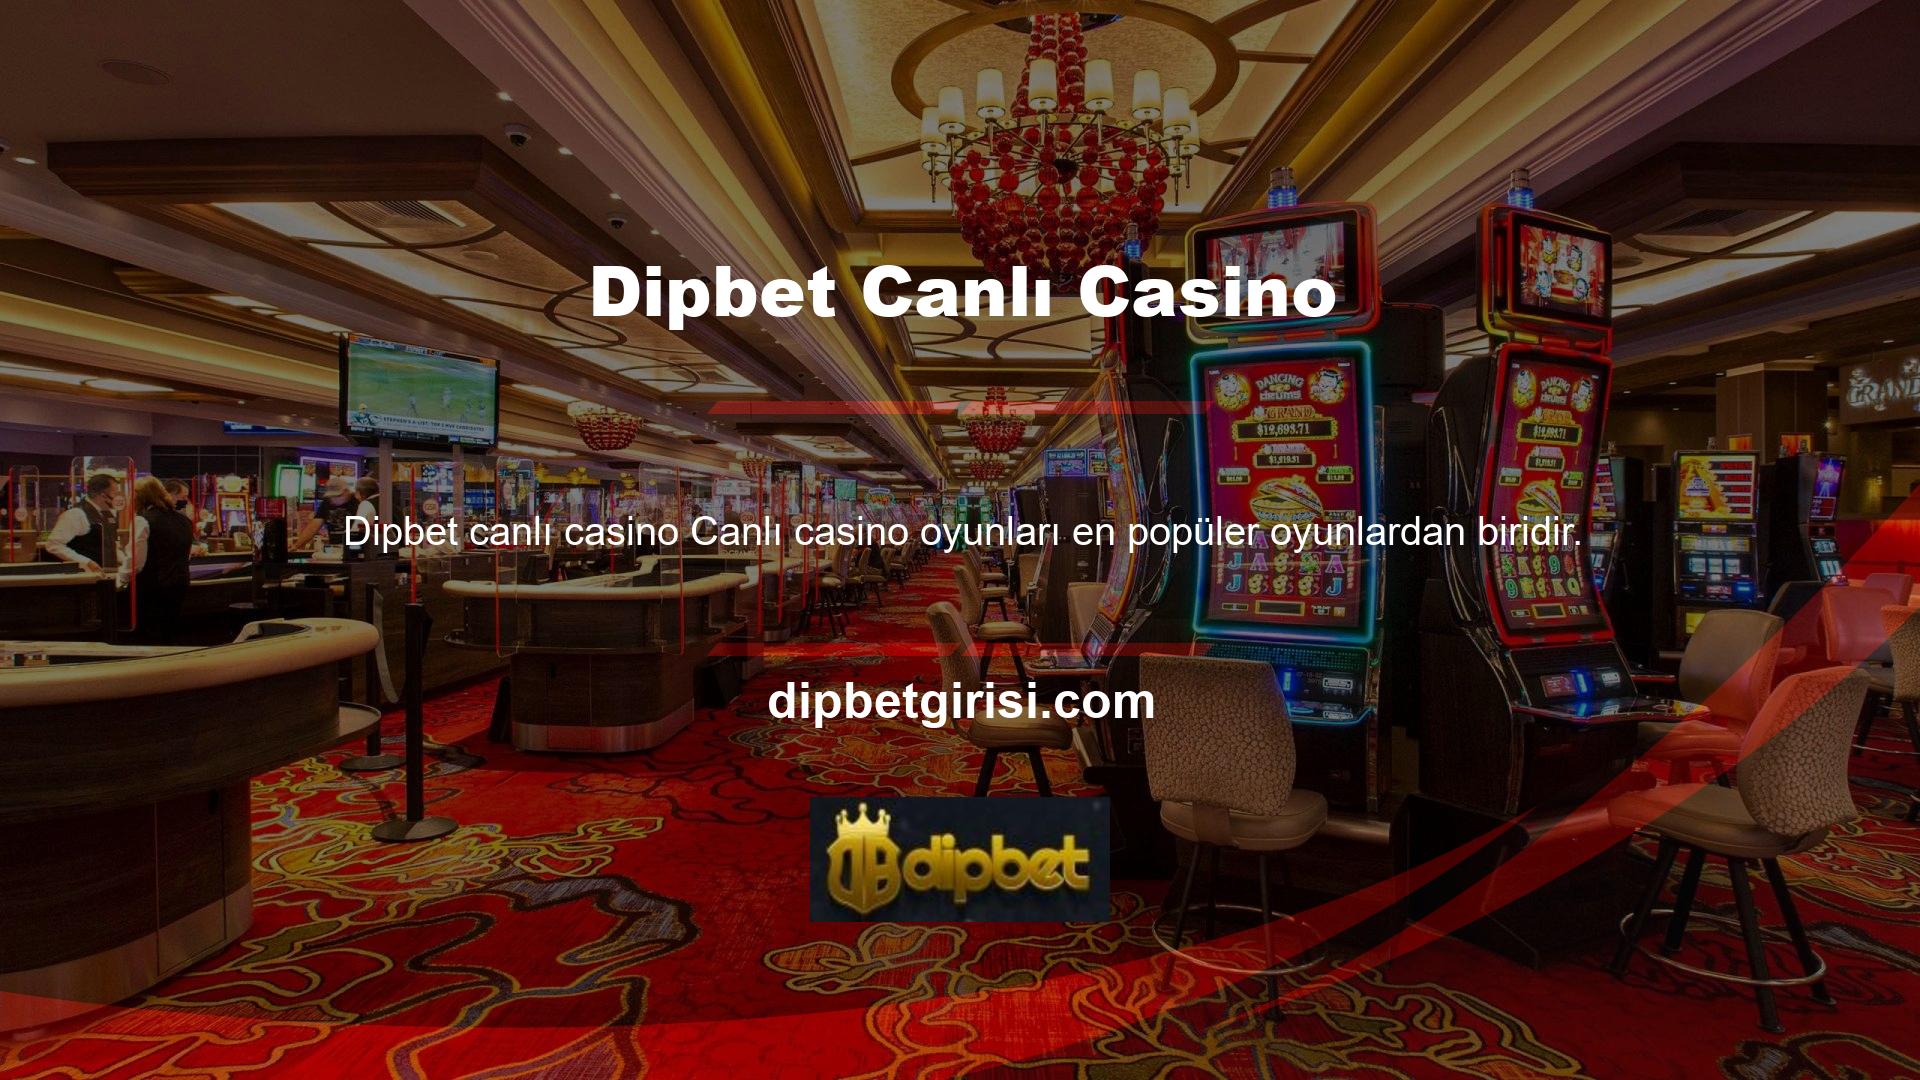 Canlı casino oyunları, kullanıcıların büyük paralar kazanırken eğlenebilecekleri en eğlenceli casino oyunlarından biridir